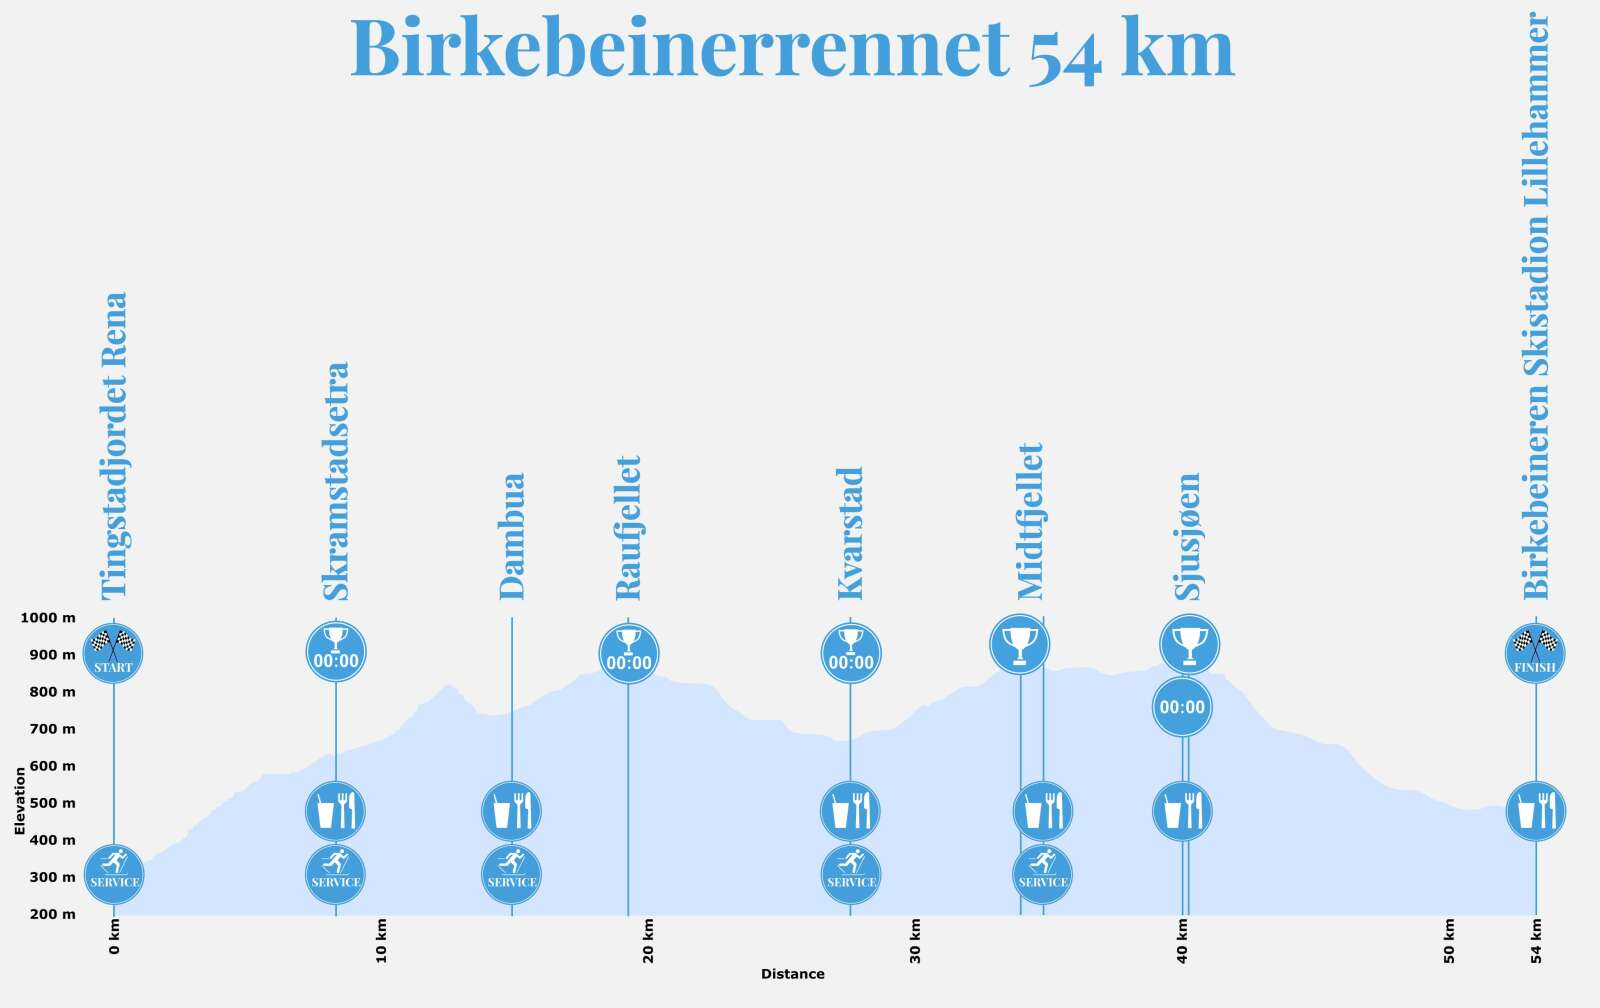 Løypeprofil med høydemeter Birkebeinerrennet 54 km